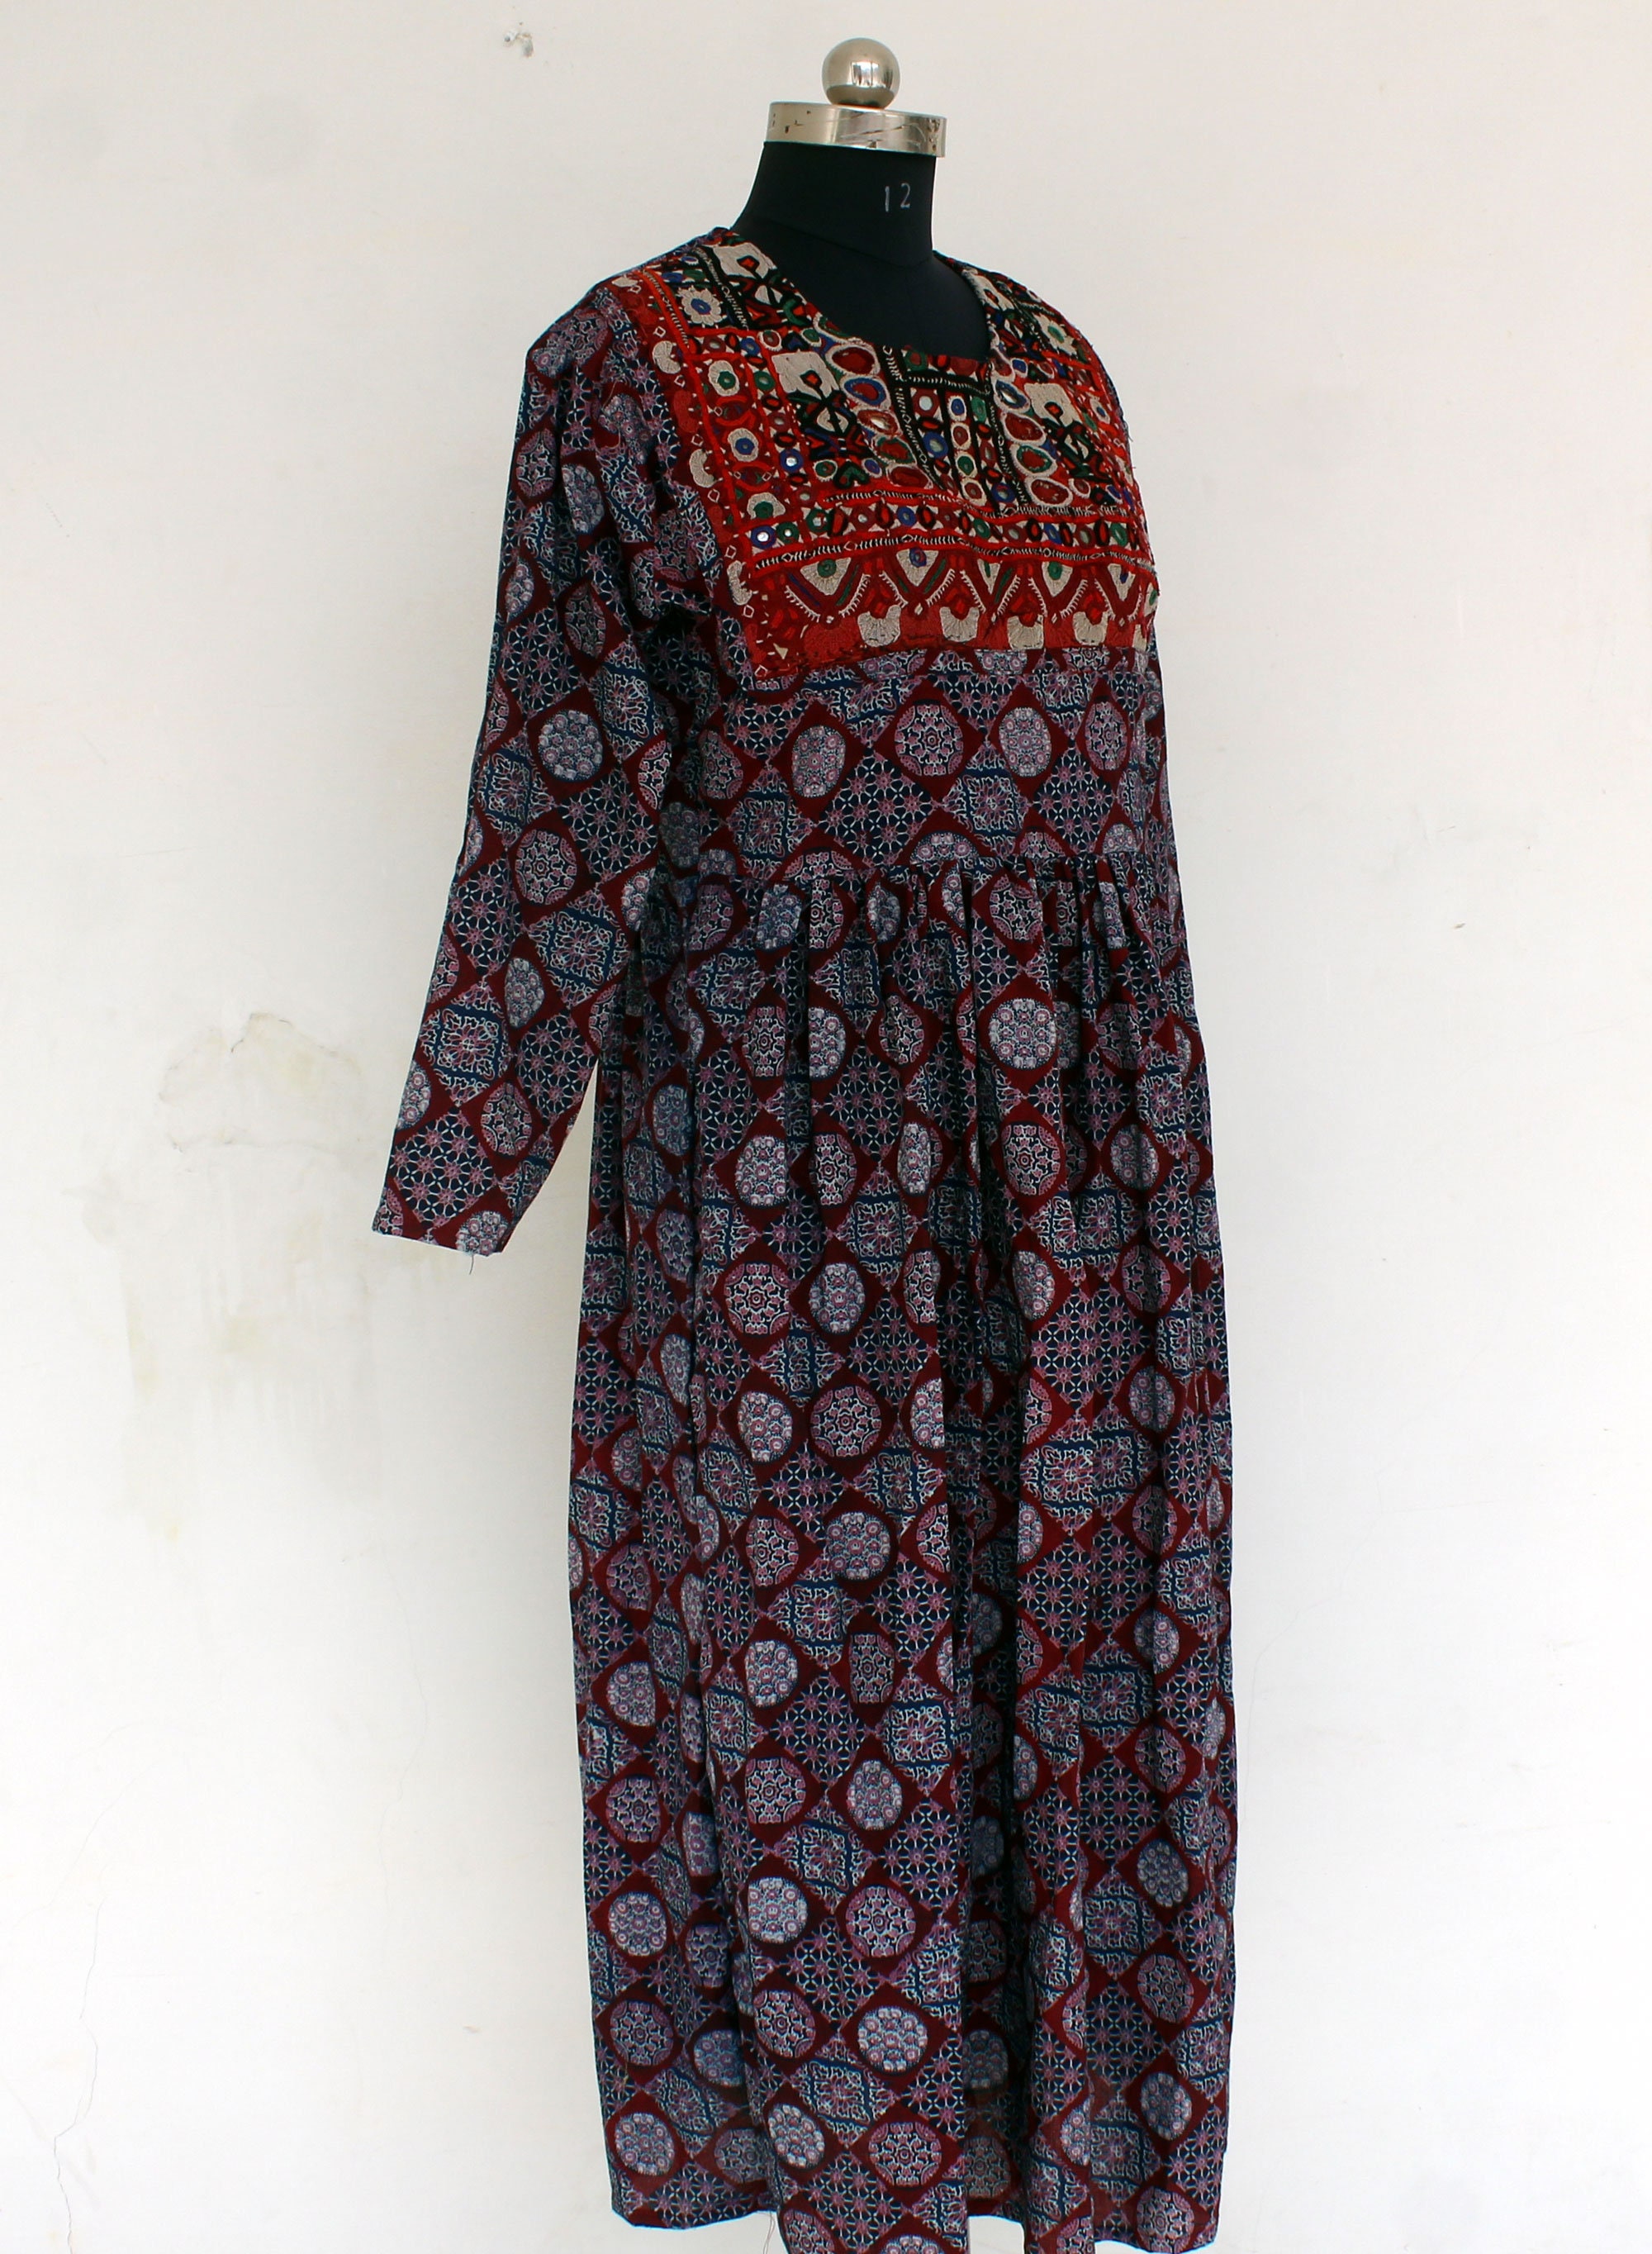 Women's Indigo Dress Hand Embroidered Banjara Top Hippie | Etsy